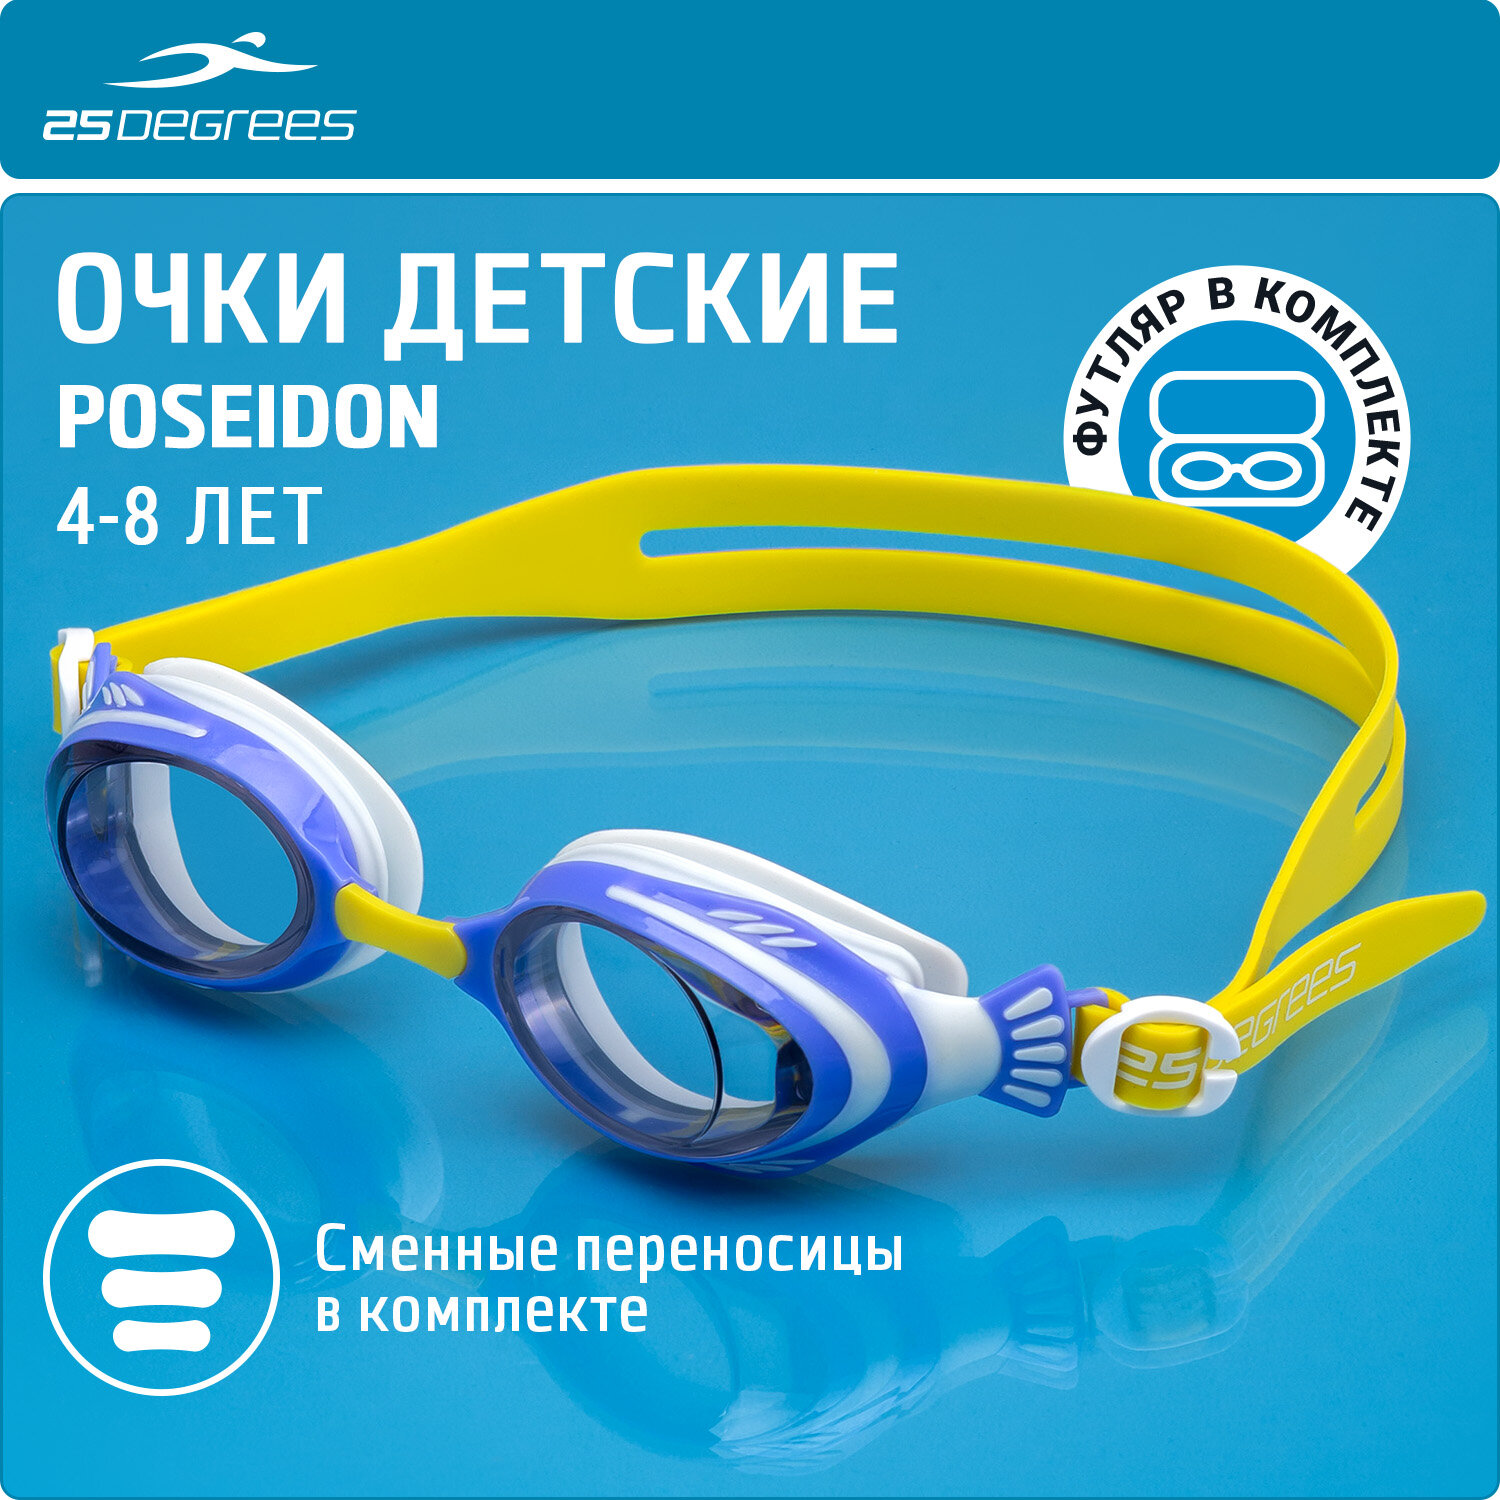 Очки для плавания детские 25DEGREES Poseidon Violet/Mosturd футляр в комплекте, цвет фиолетовый/горчичный